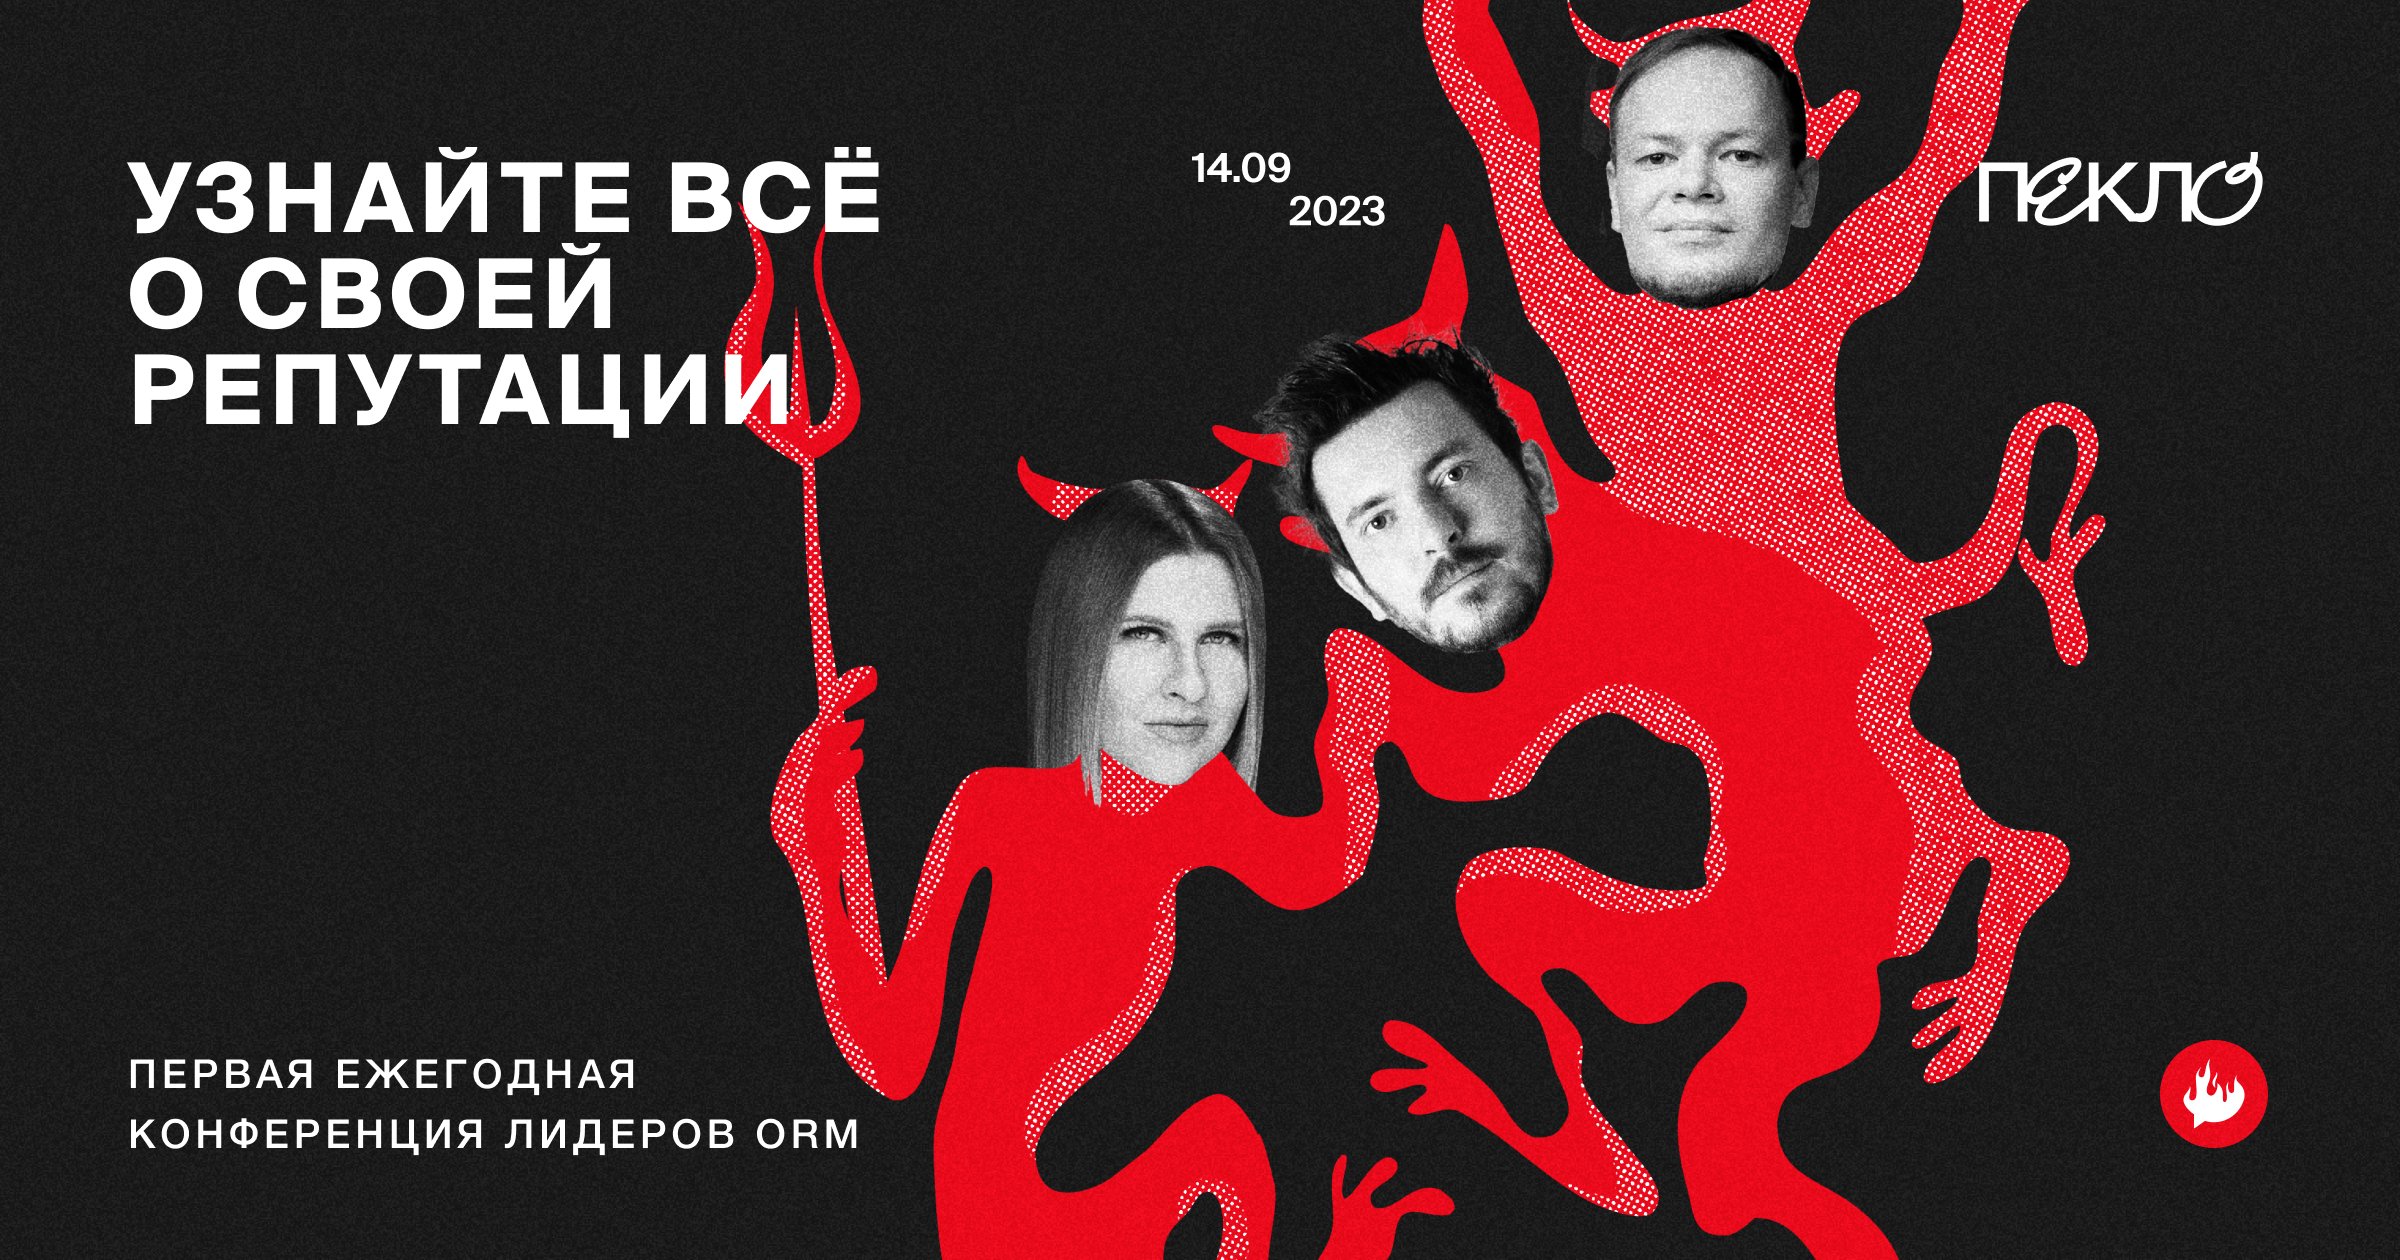 В Москве пройдет традиционная конференция о репутационном маркетинге ПЕКЛО-2023